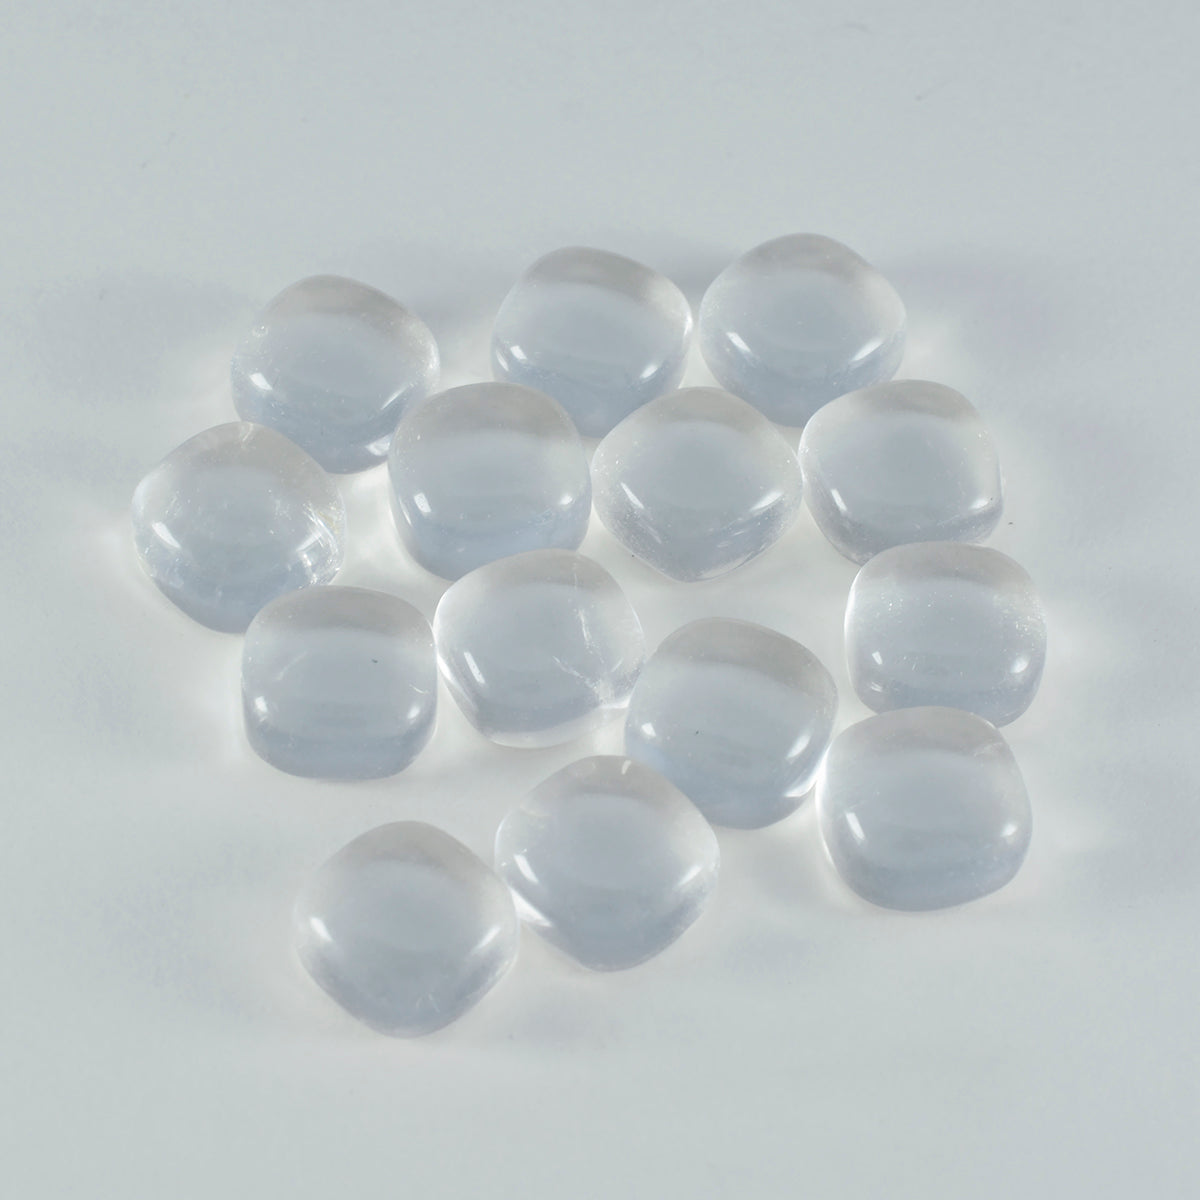 Riyogems 1 Stück weißer Kristallquarz-Cabochon, 6 x 6 mm, Kissenform, attraktiver Qualitätsedelstein